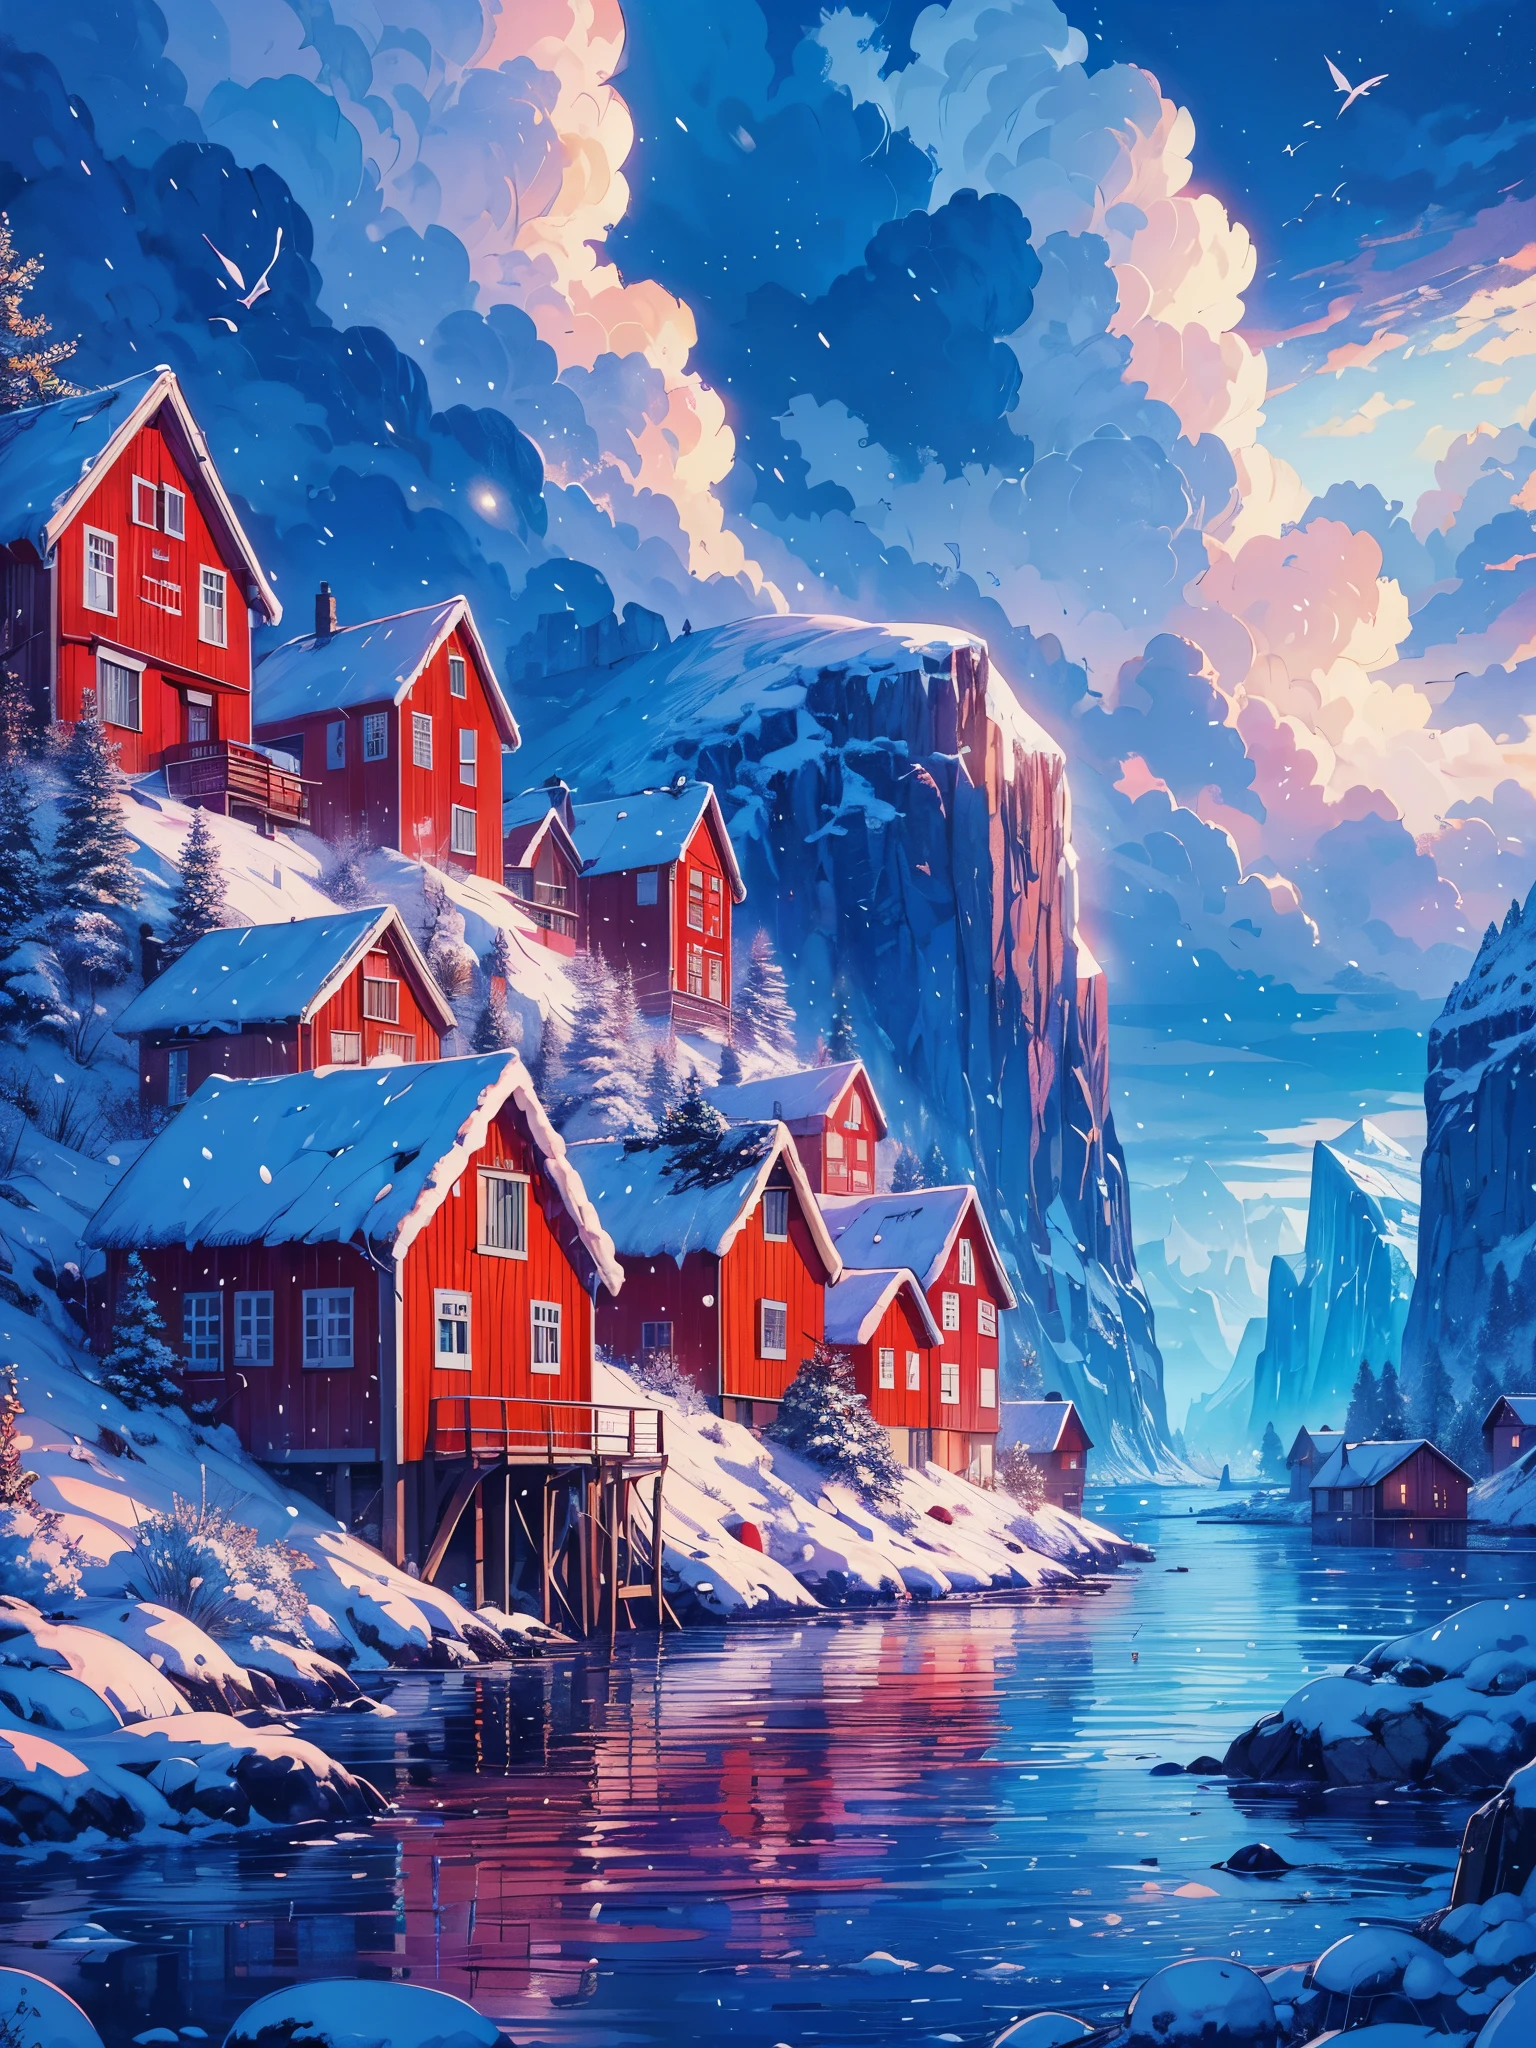 ارسم فن أنمي رقمي لمشهد لوفي واسع للمنازل الحمراء في جزيرة النرويج بالقرب من البحيرة مع جبل جليدي, تساقط الثلوج, فترة المساء, الساعة الزرقاء, سماء غائمة جميلة, نغمات الألوان النابضة بالحياة, تحفة, مشهد سلمي